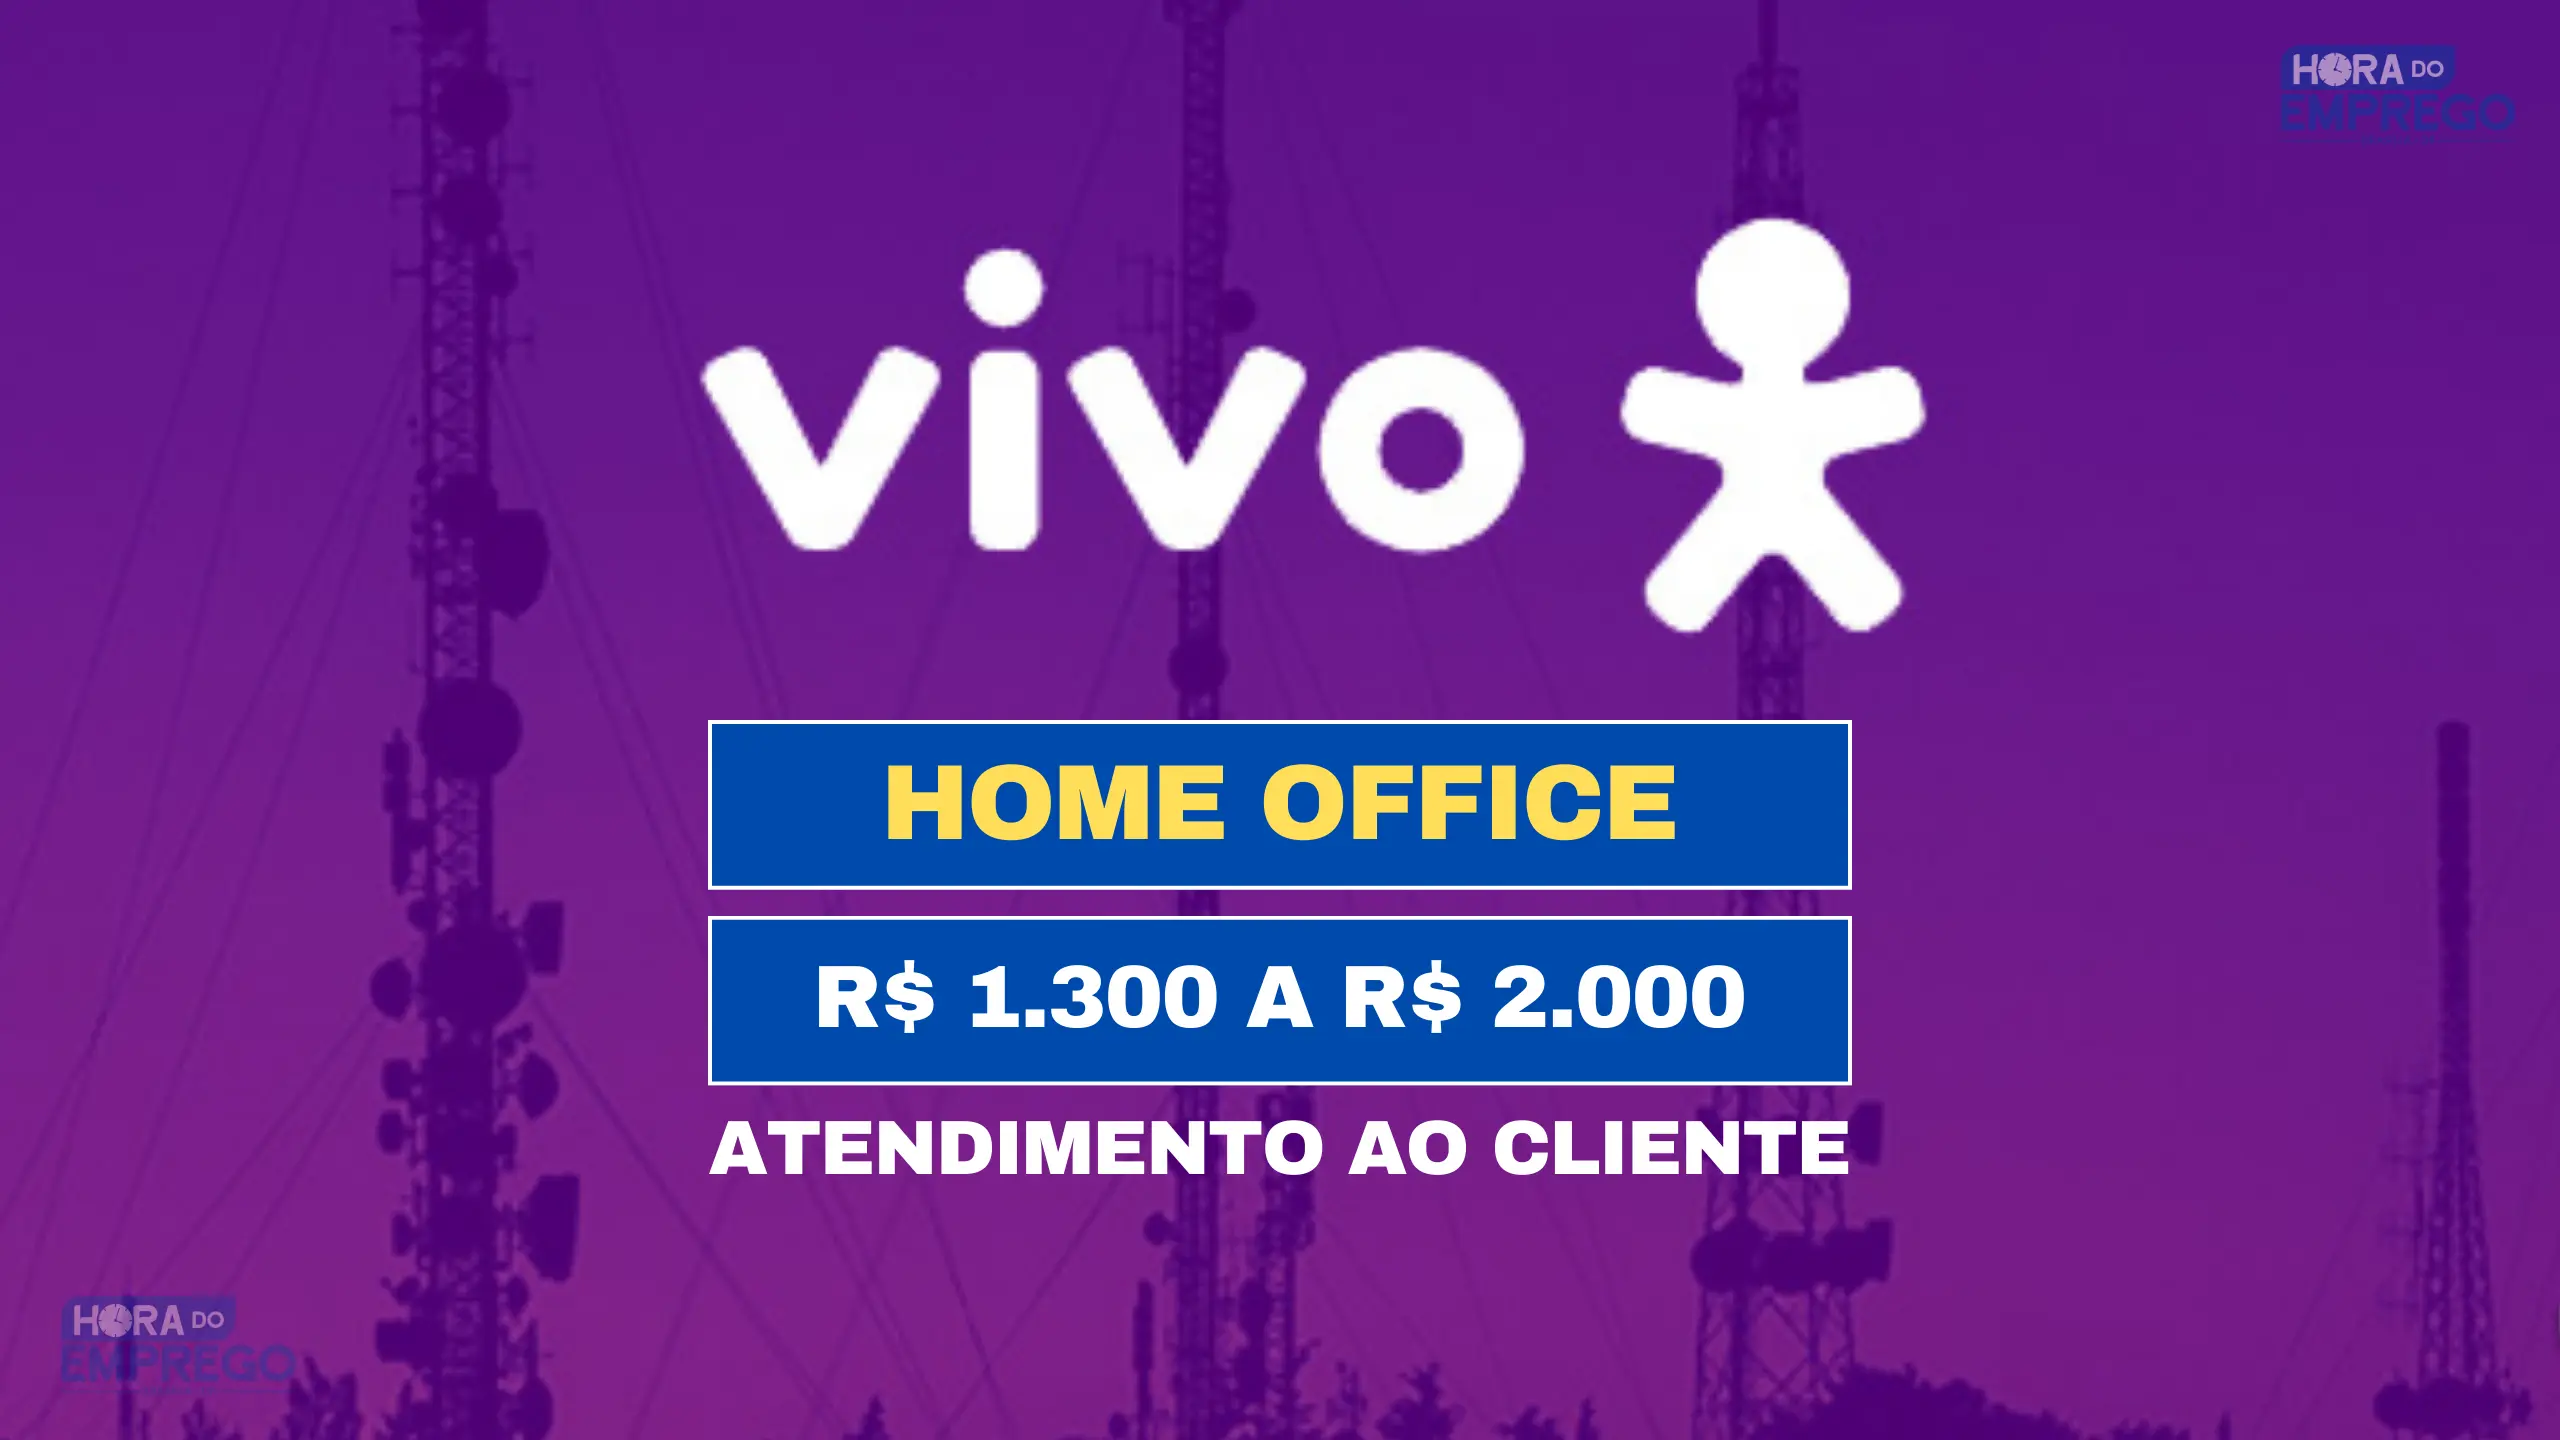 Operadora VIVO abriu 10 vagas para HOME OFFICE com salário de R$ 2.000 para Atendimento ao Cliente